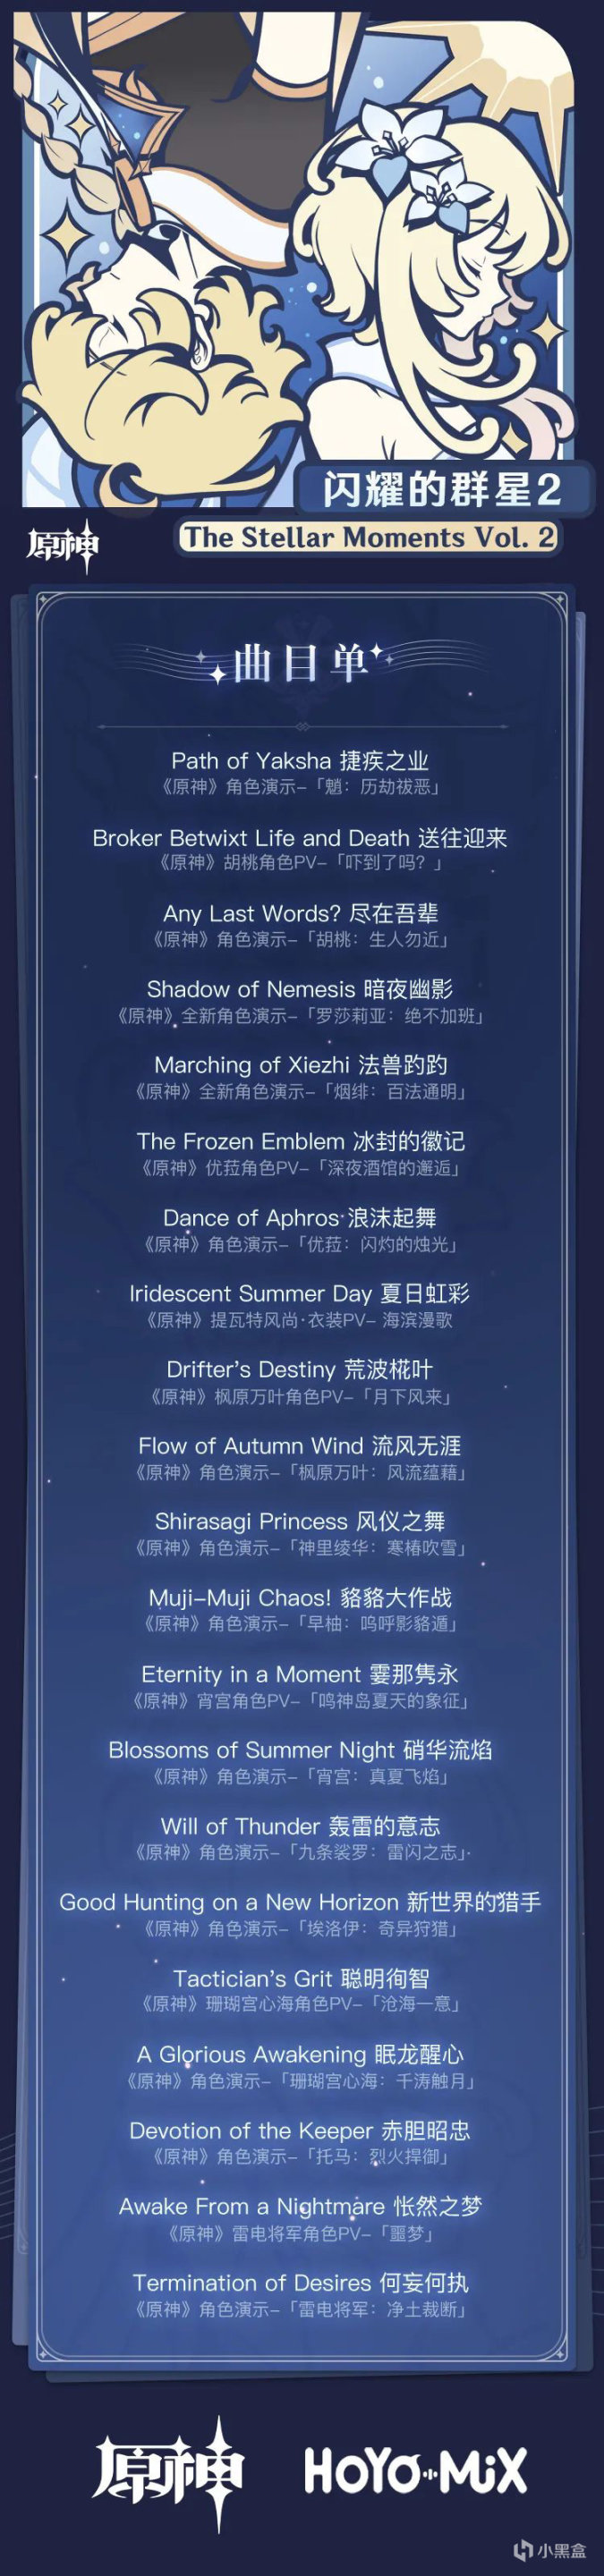 《原神》第二张角色主题 OST 专辑《闪耀的群星 2》即将上线-第1张